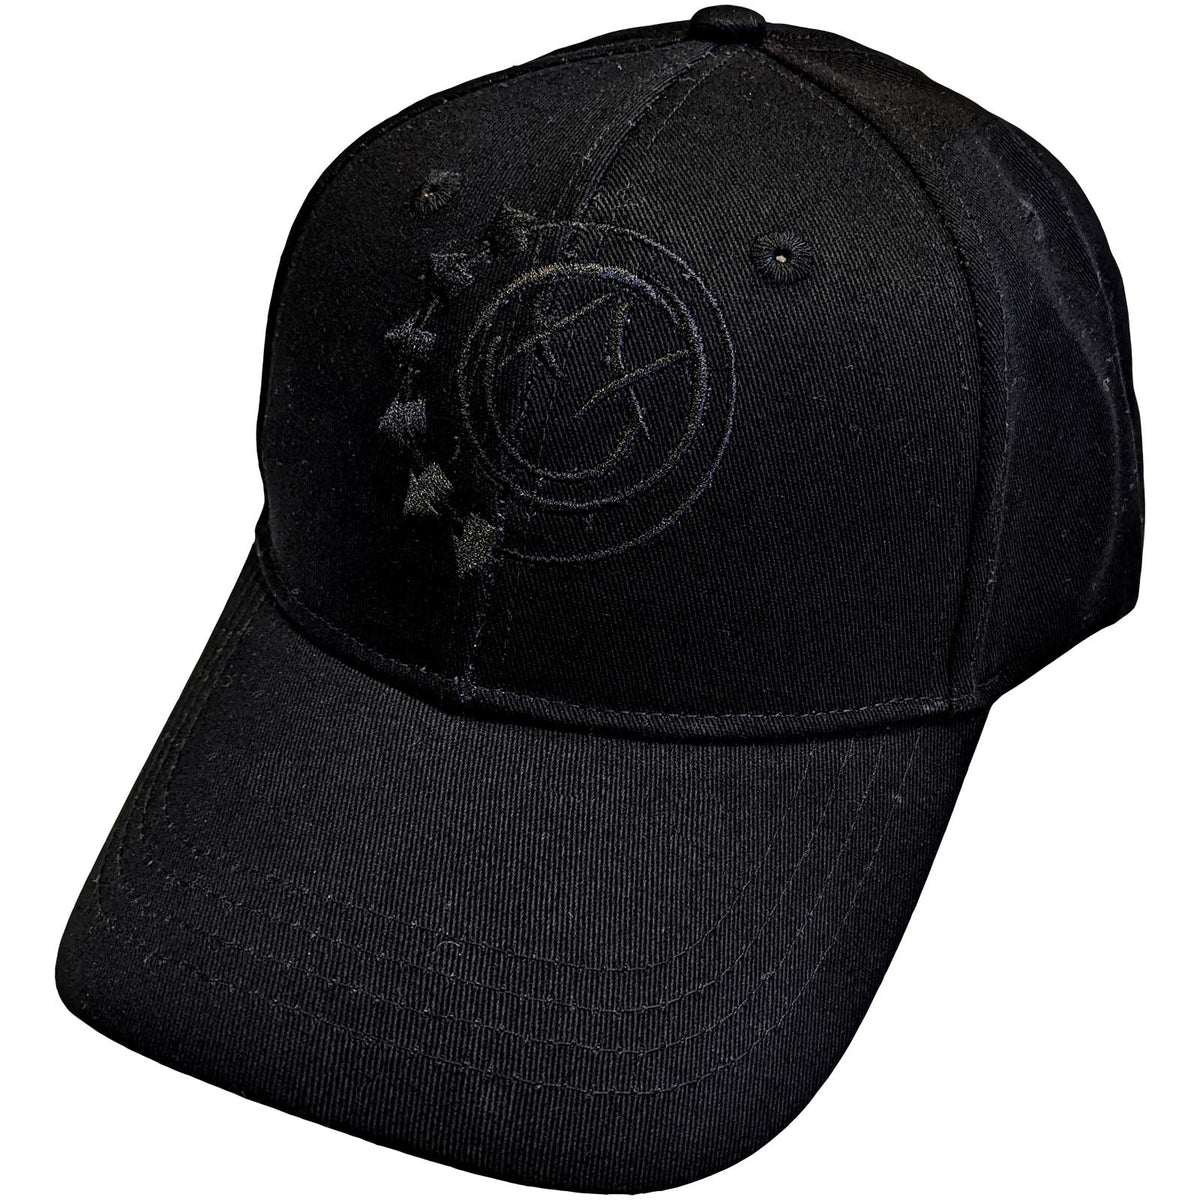 Blink 182 Official Licensed Baseball Cap - Black Six Arrow Smile